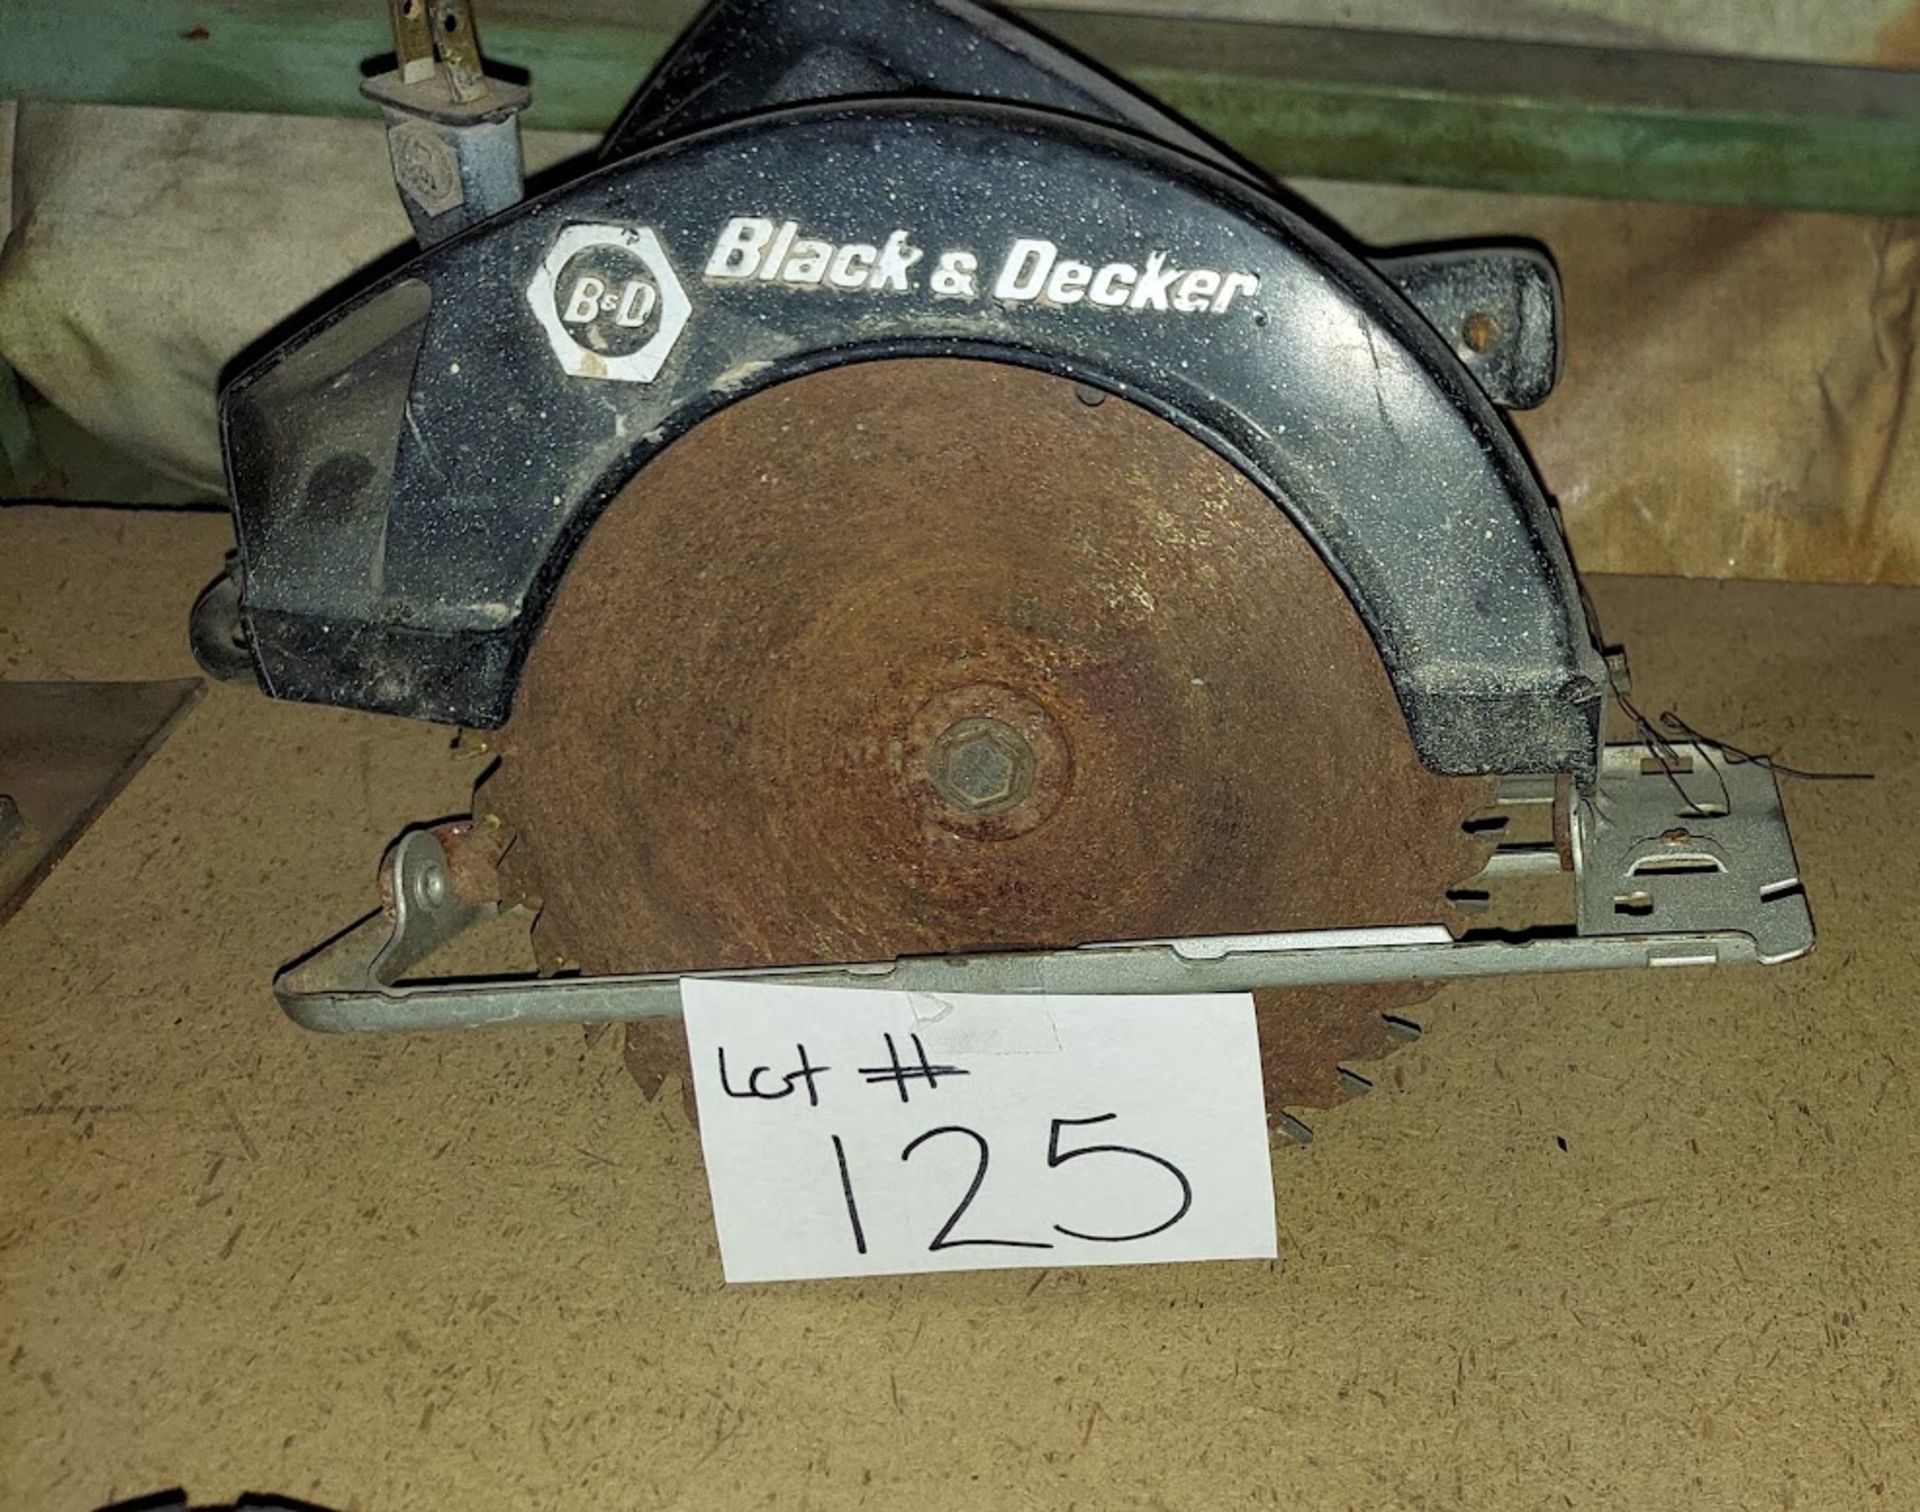 Black & Decker circular saw, 115V